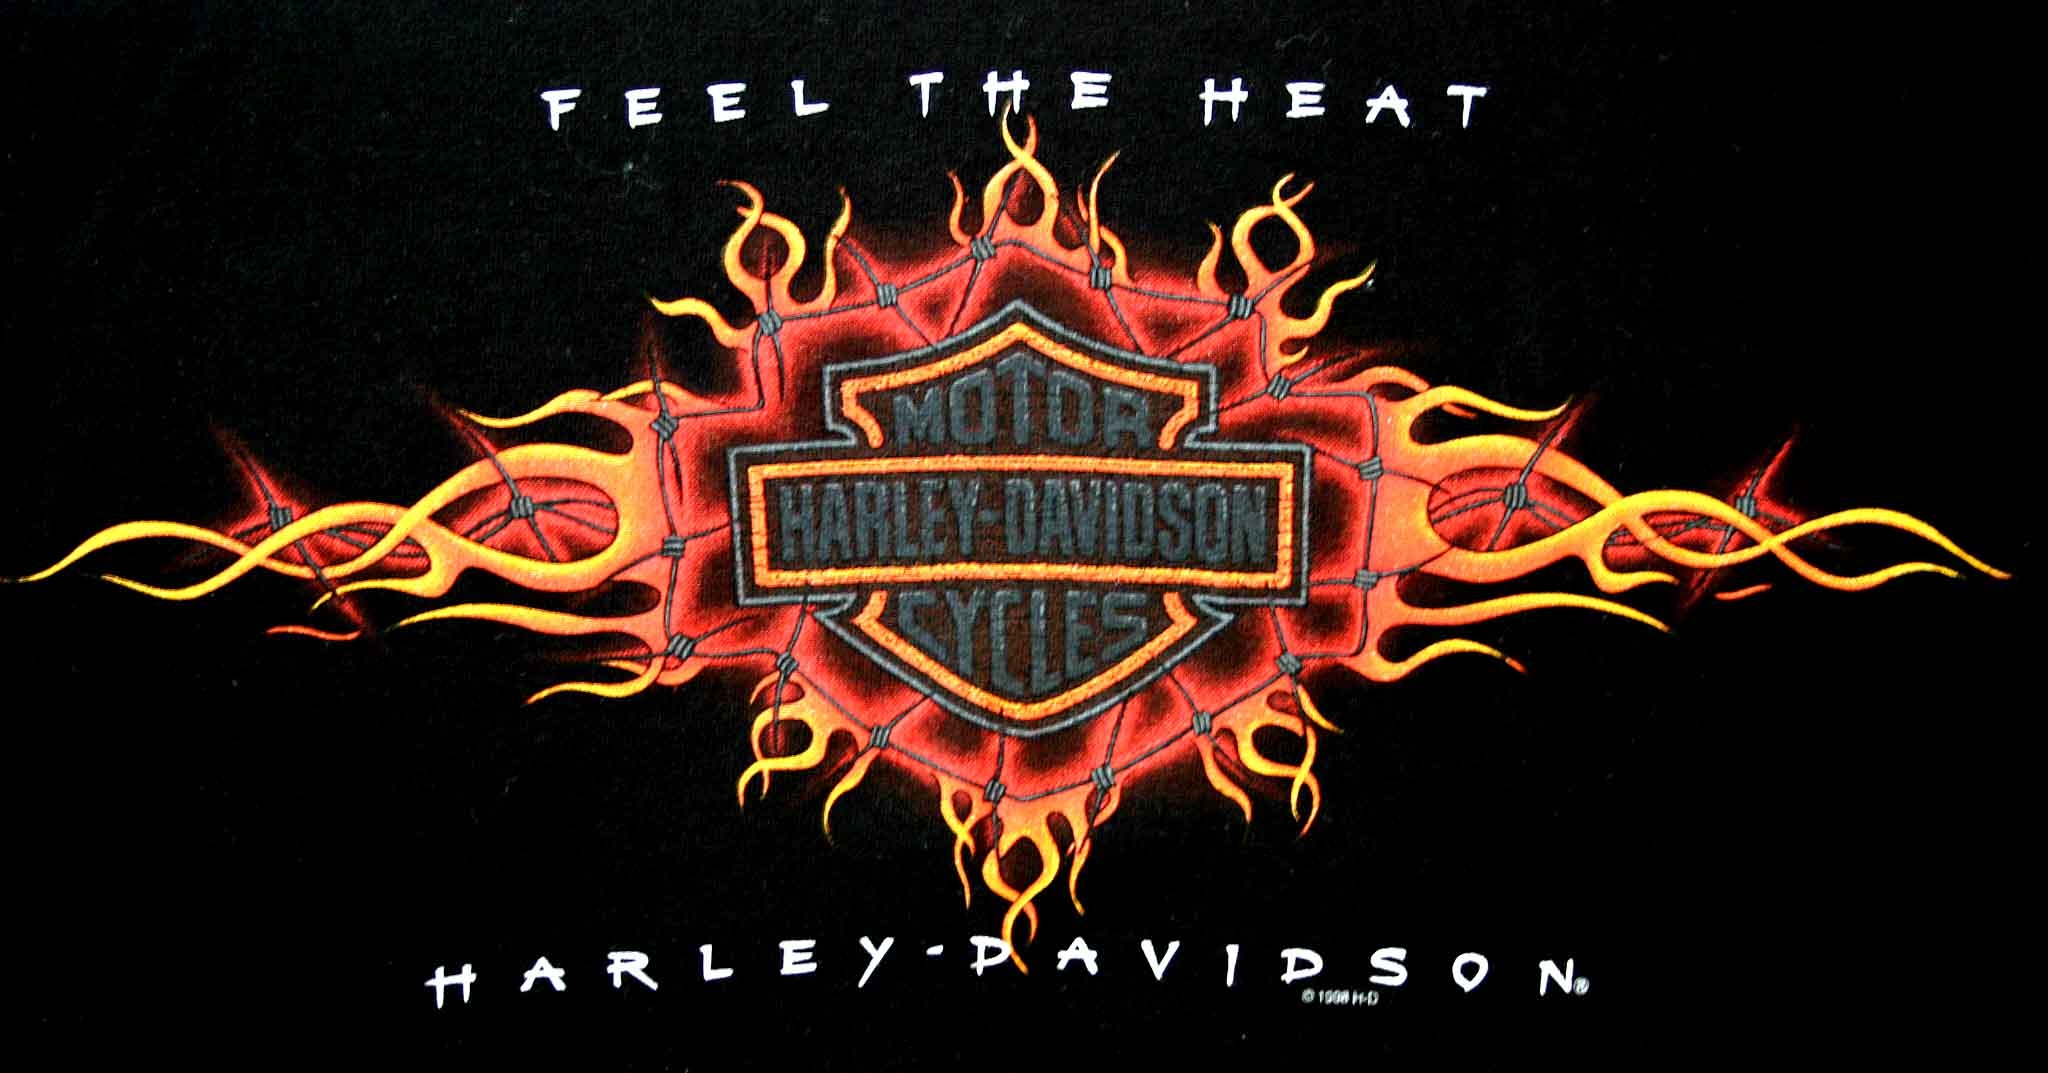 Harley Davidson 1 Skull Logo Harley davidson t shirt